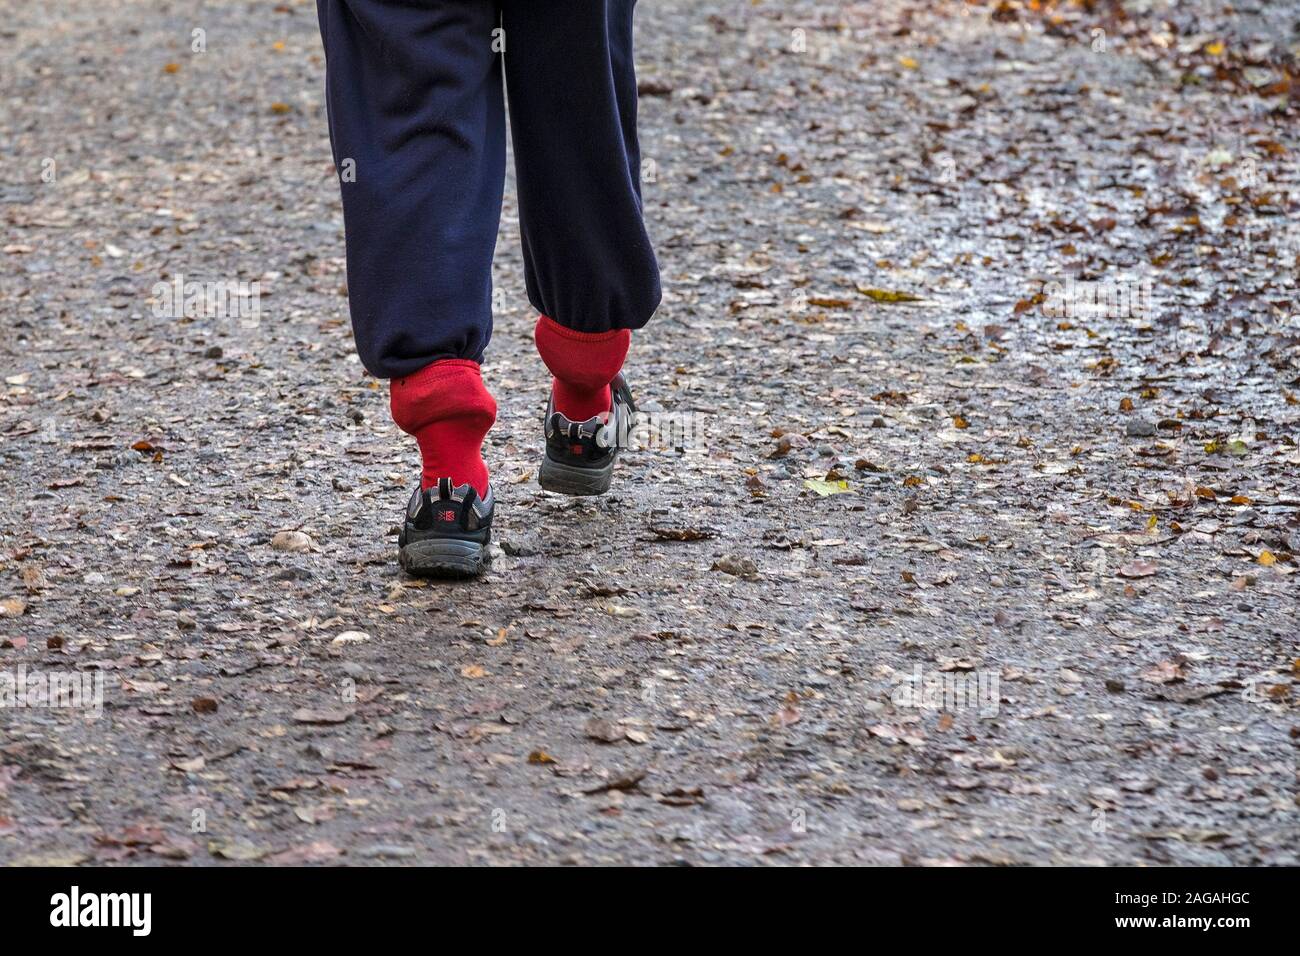 Ein Mann mit seiner Hose in seine roten Socken Wandern entlang eines Pfads  versteckt Stockfotografie - Alamy